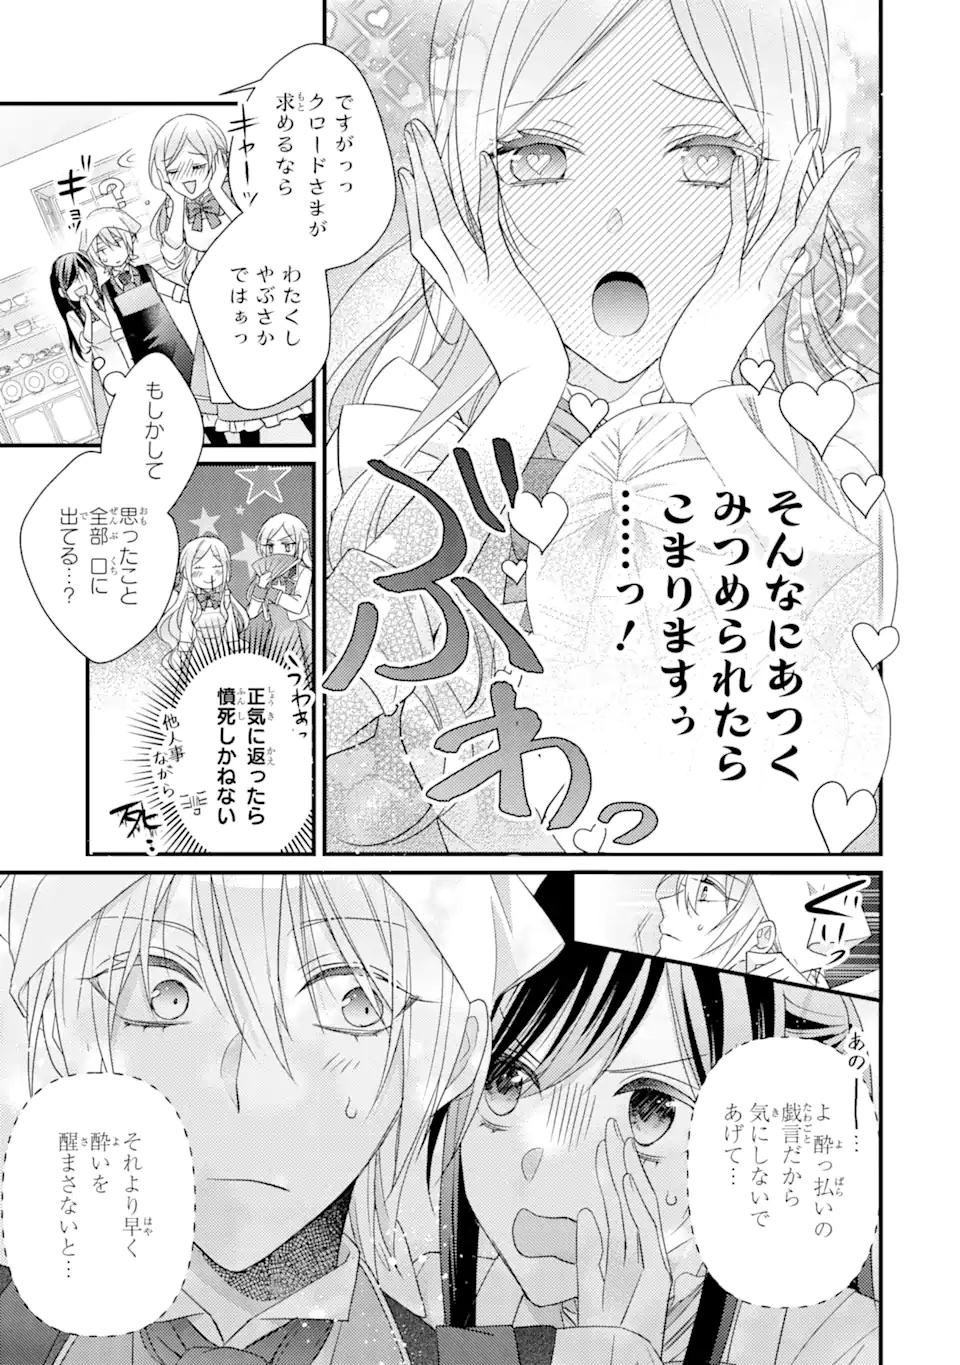 Kekkon suru Shinde Shimau no de, Kanst Seijo (Lv. 99) wa Meshi Tero Shimasu! - Chapter 7.2 - Page 8